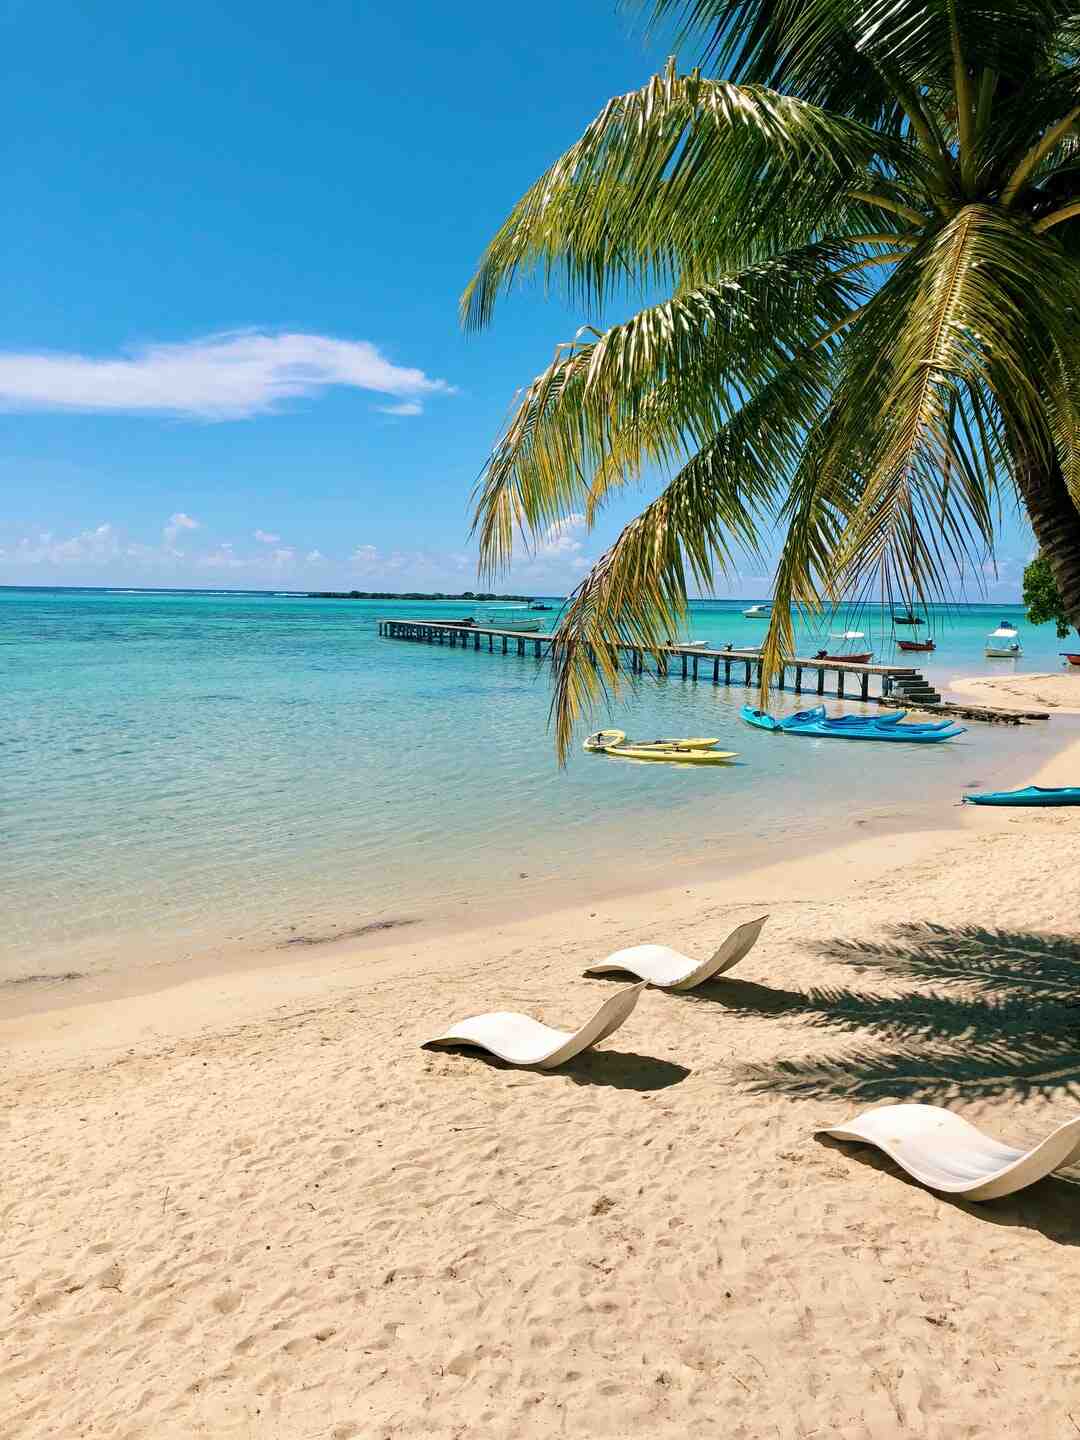 Який найкрасивіший острів на Таїті?